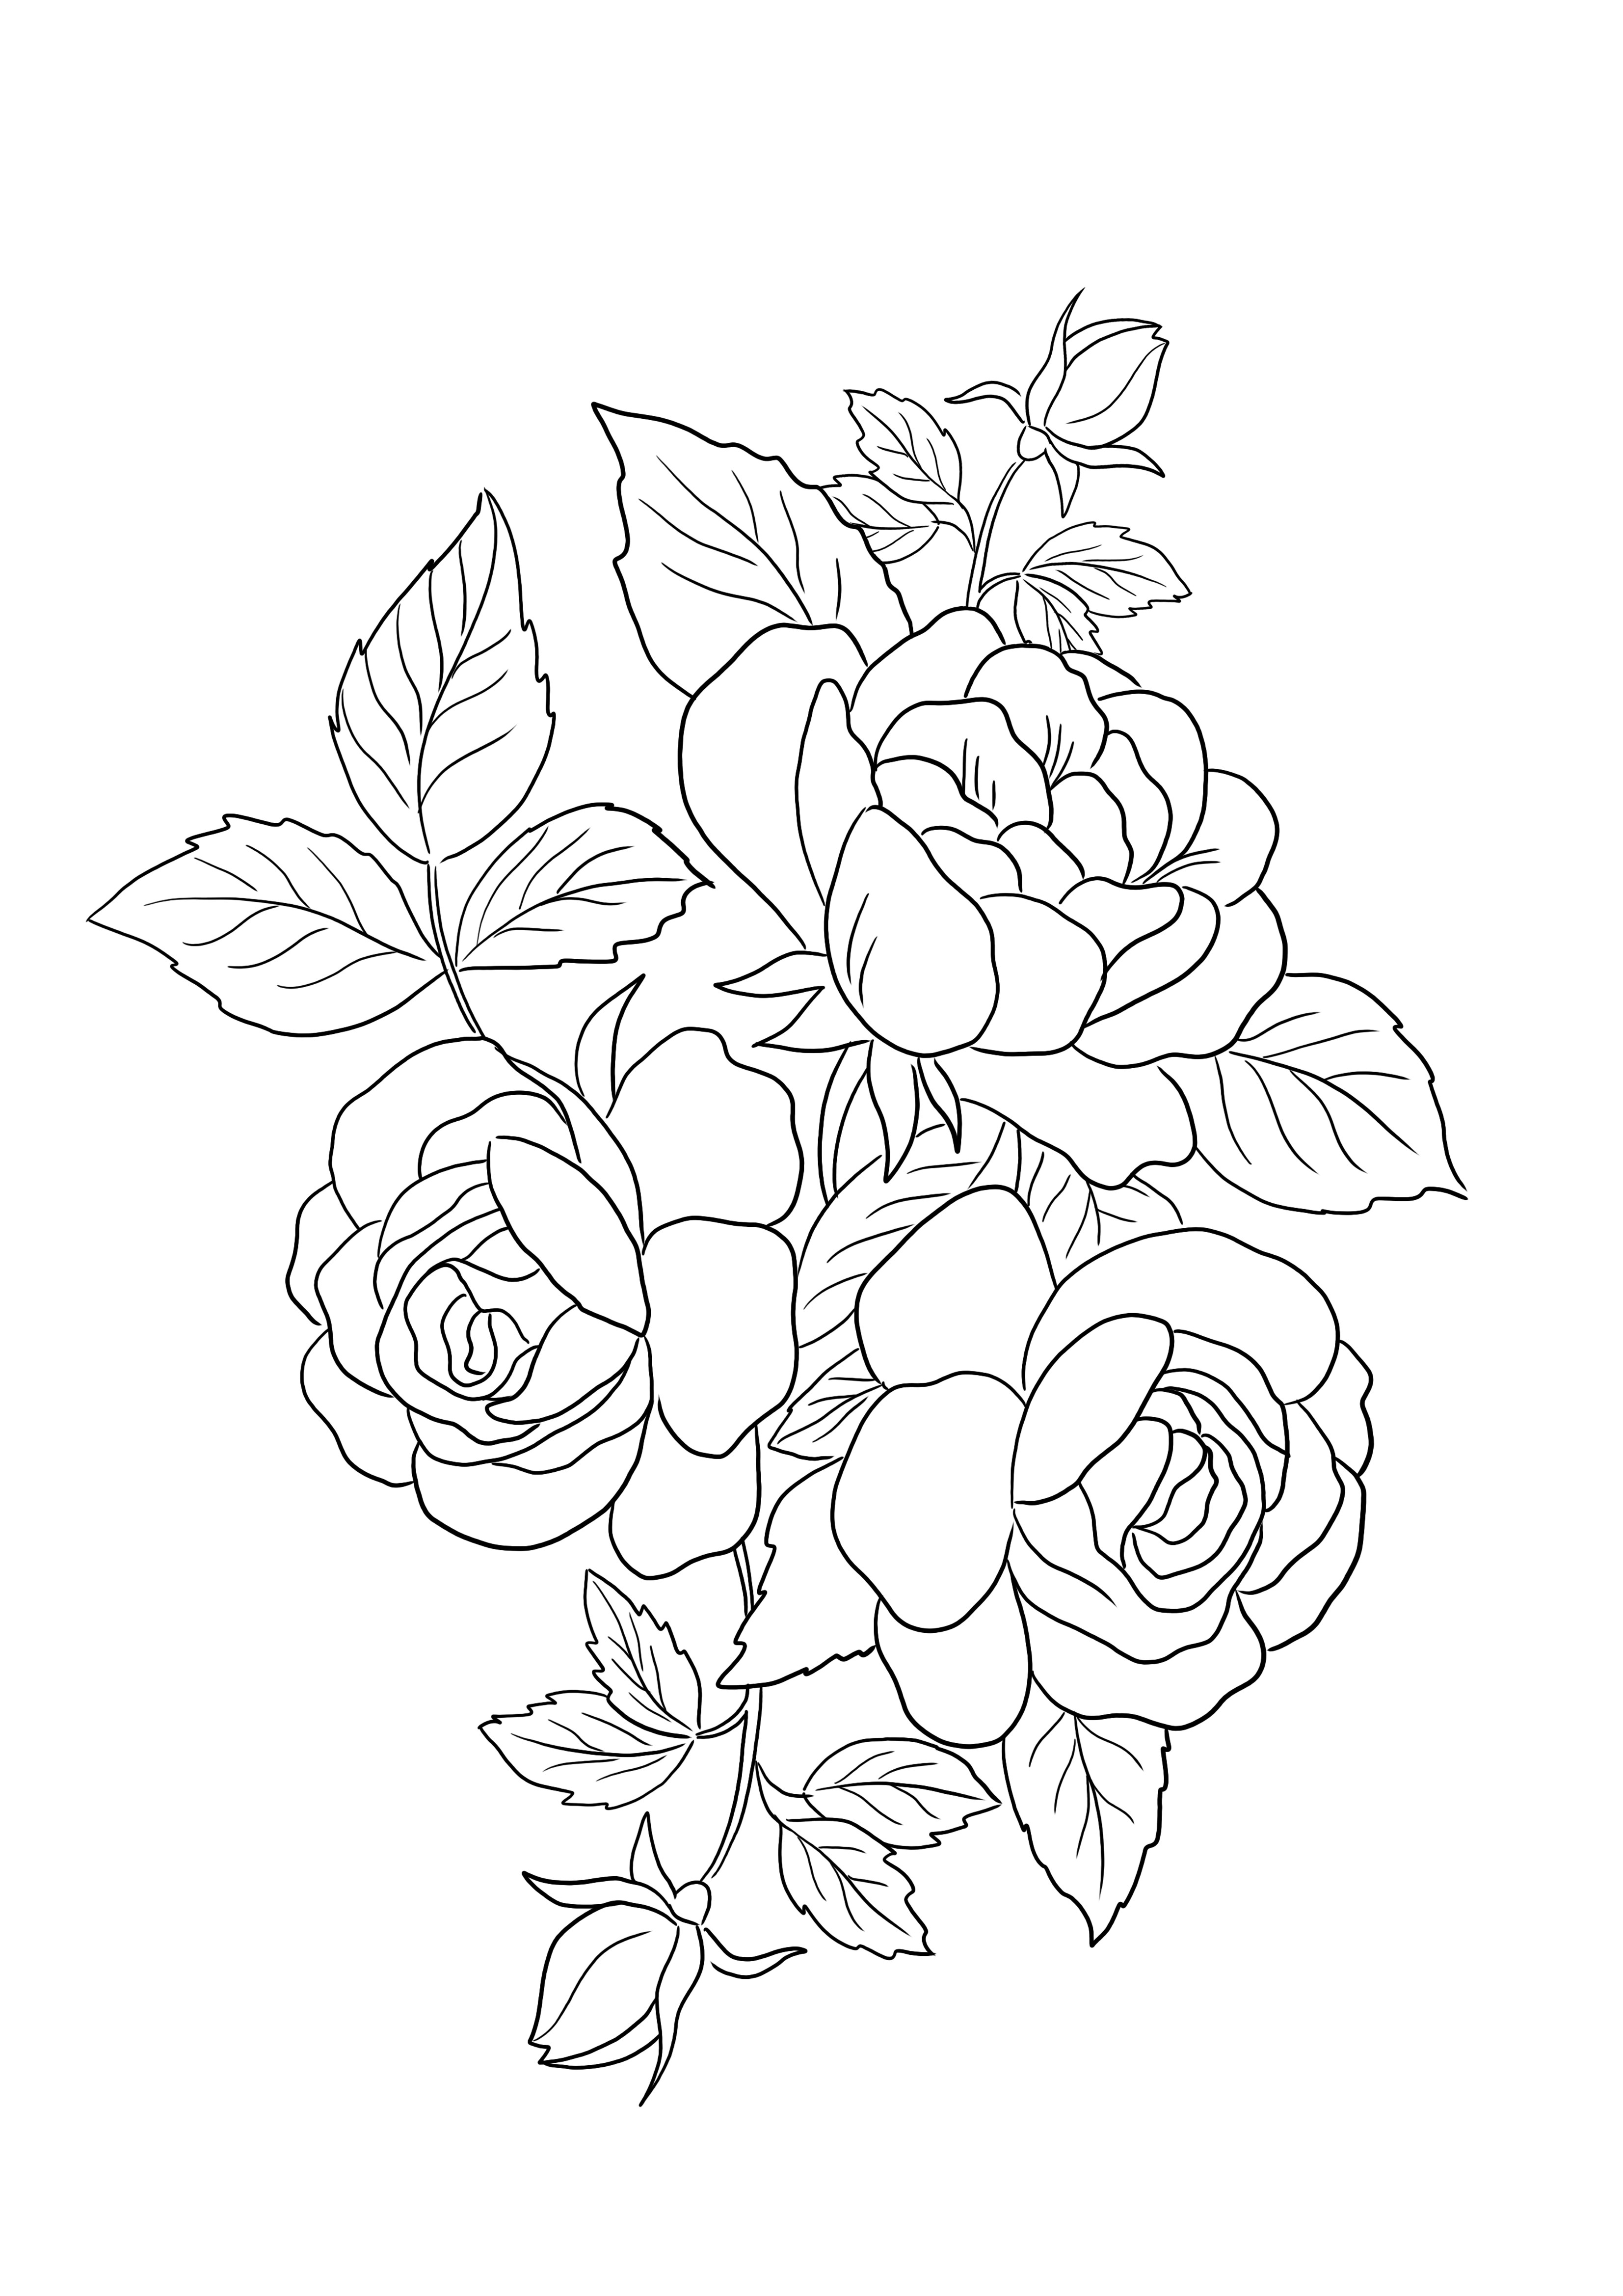 Imagen para colorear gratis de Rosas Flores para imprimir o descargar para los niños